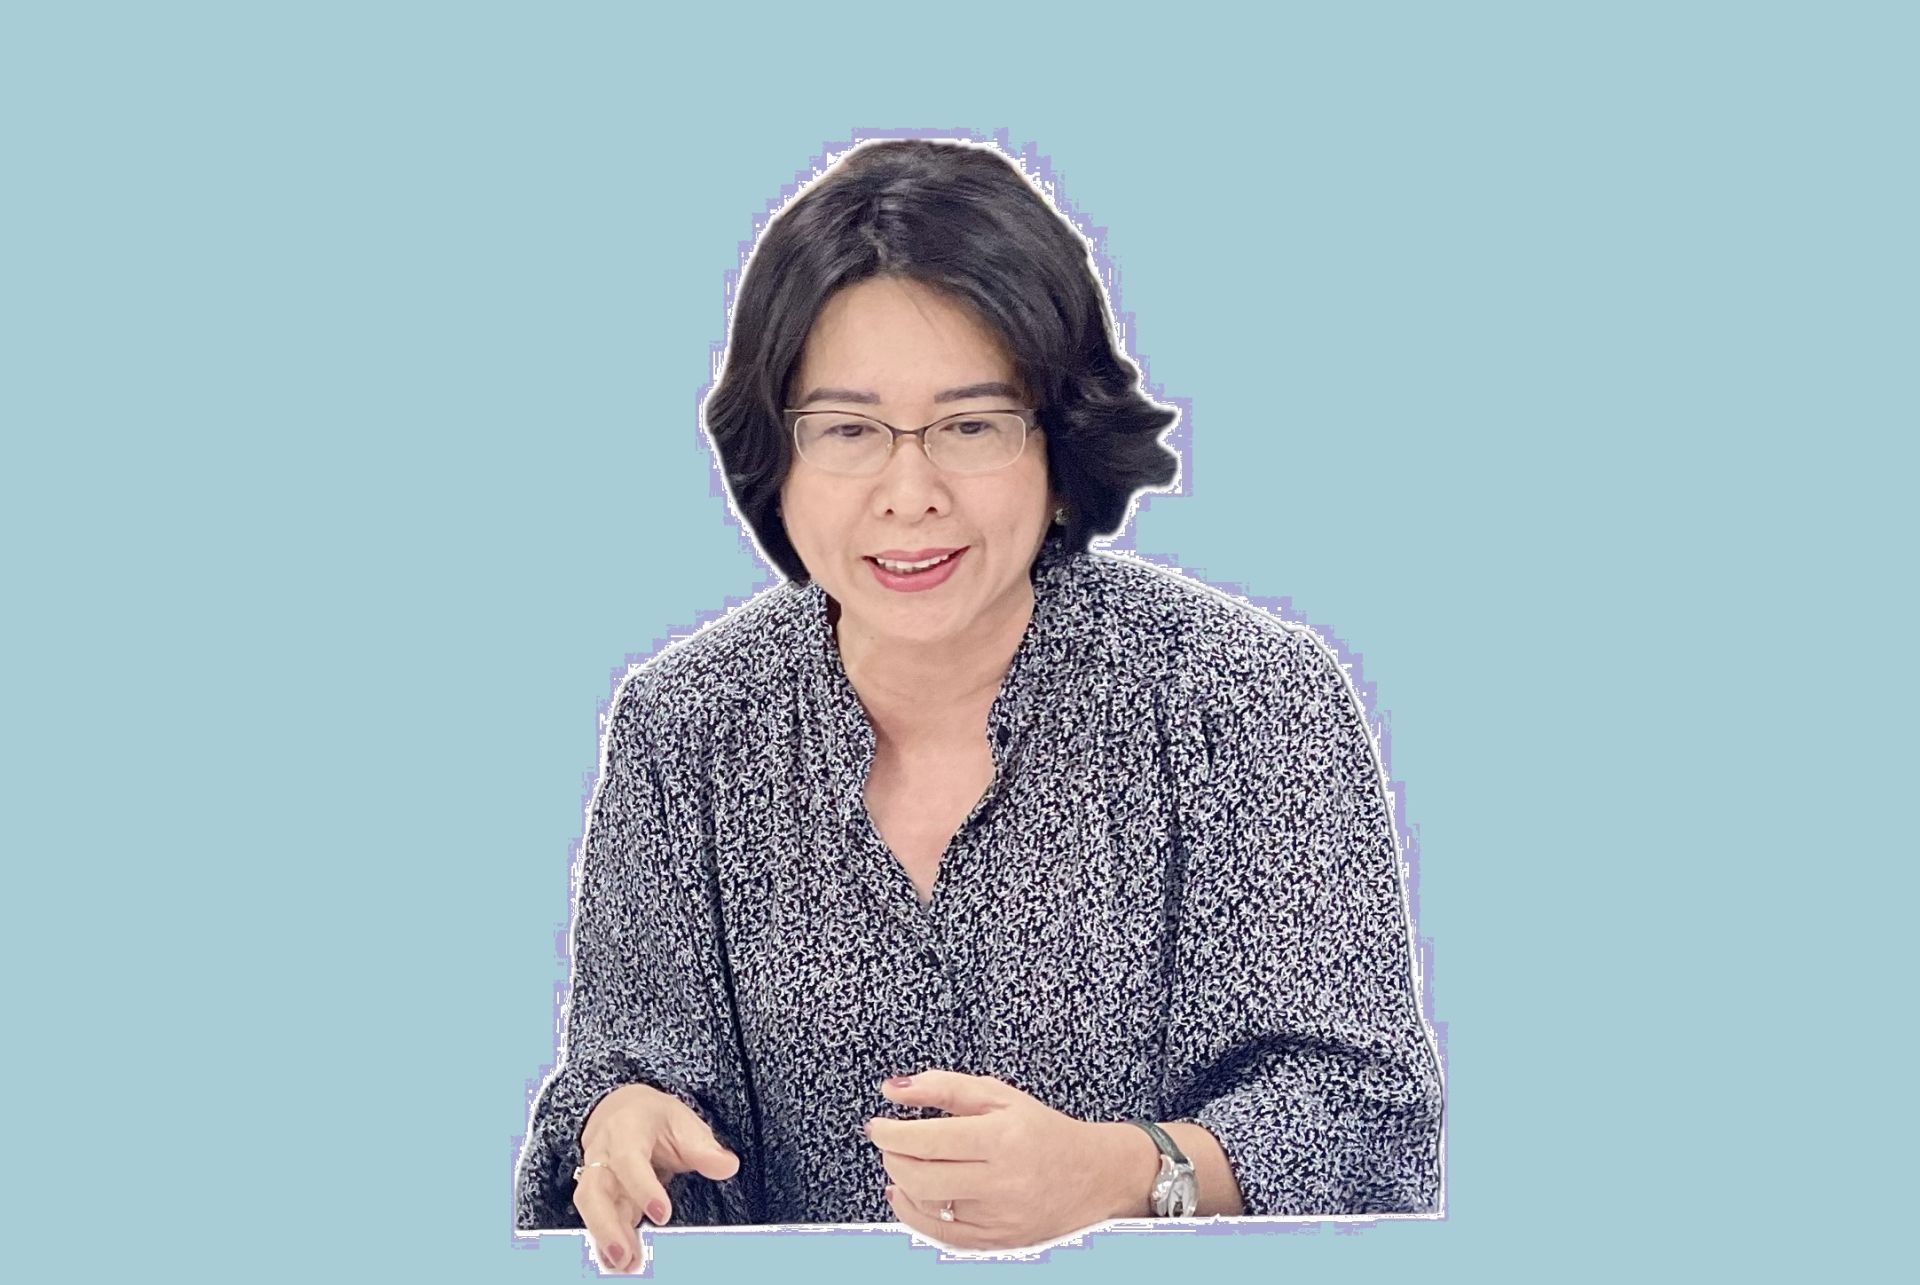 TS. Trần Hồng Minh - Viện trưởng Viện nghiên cứu quản lý kinh tế Trung ương (CIEM)